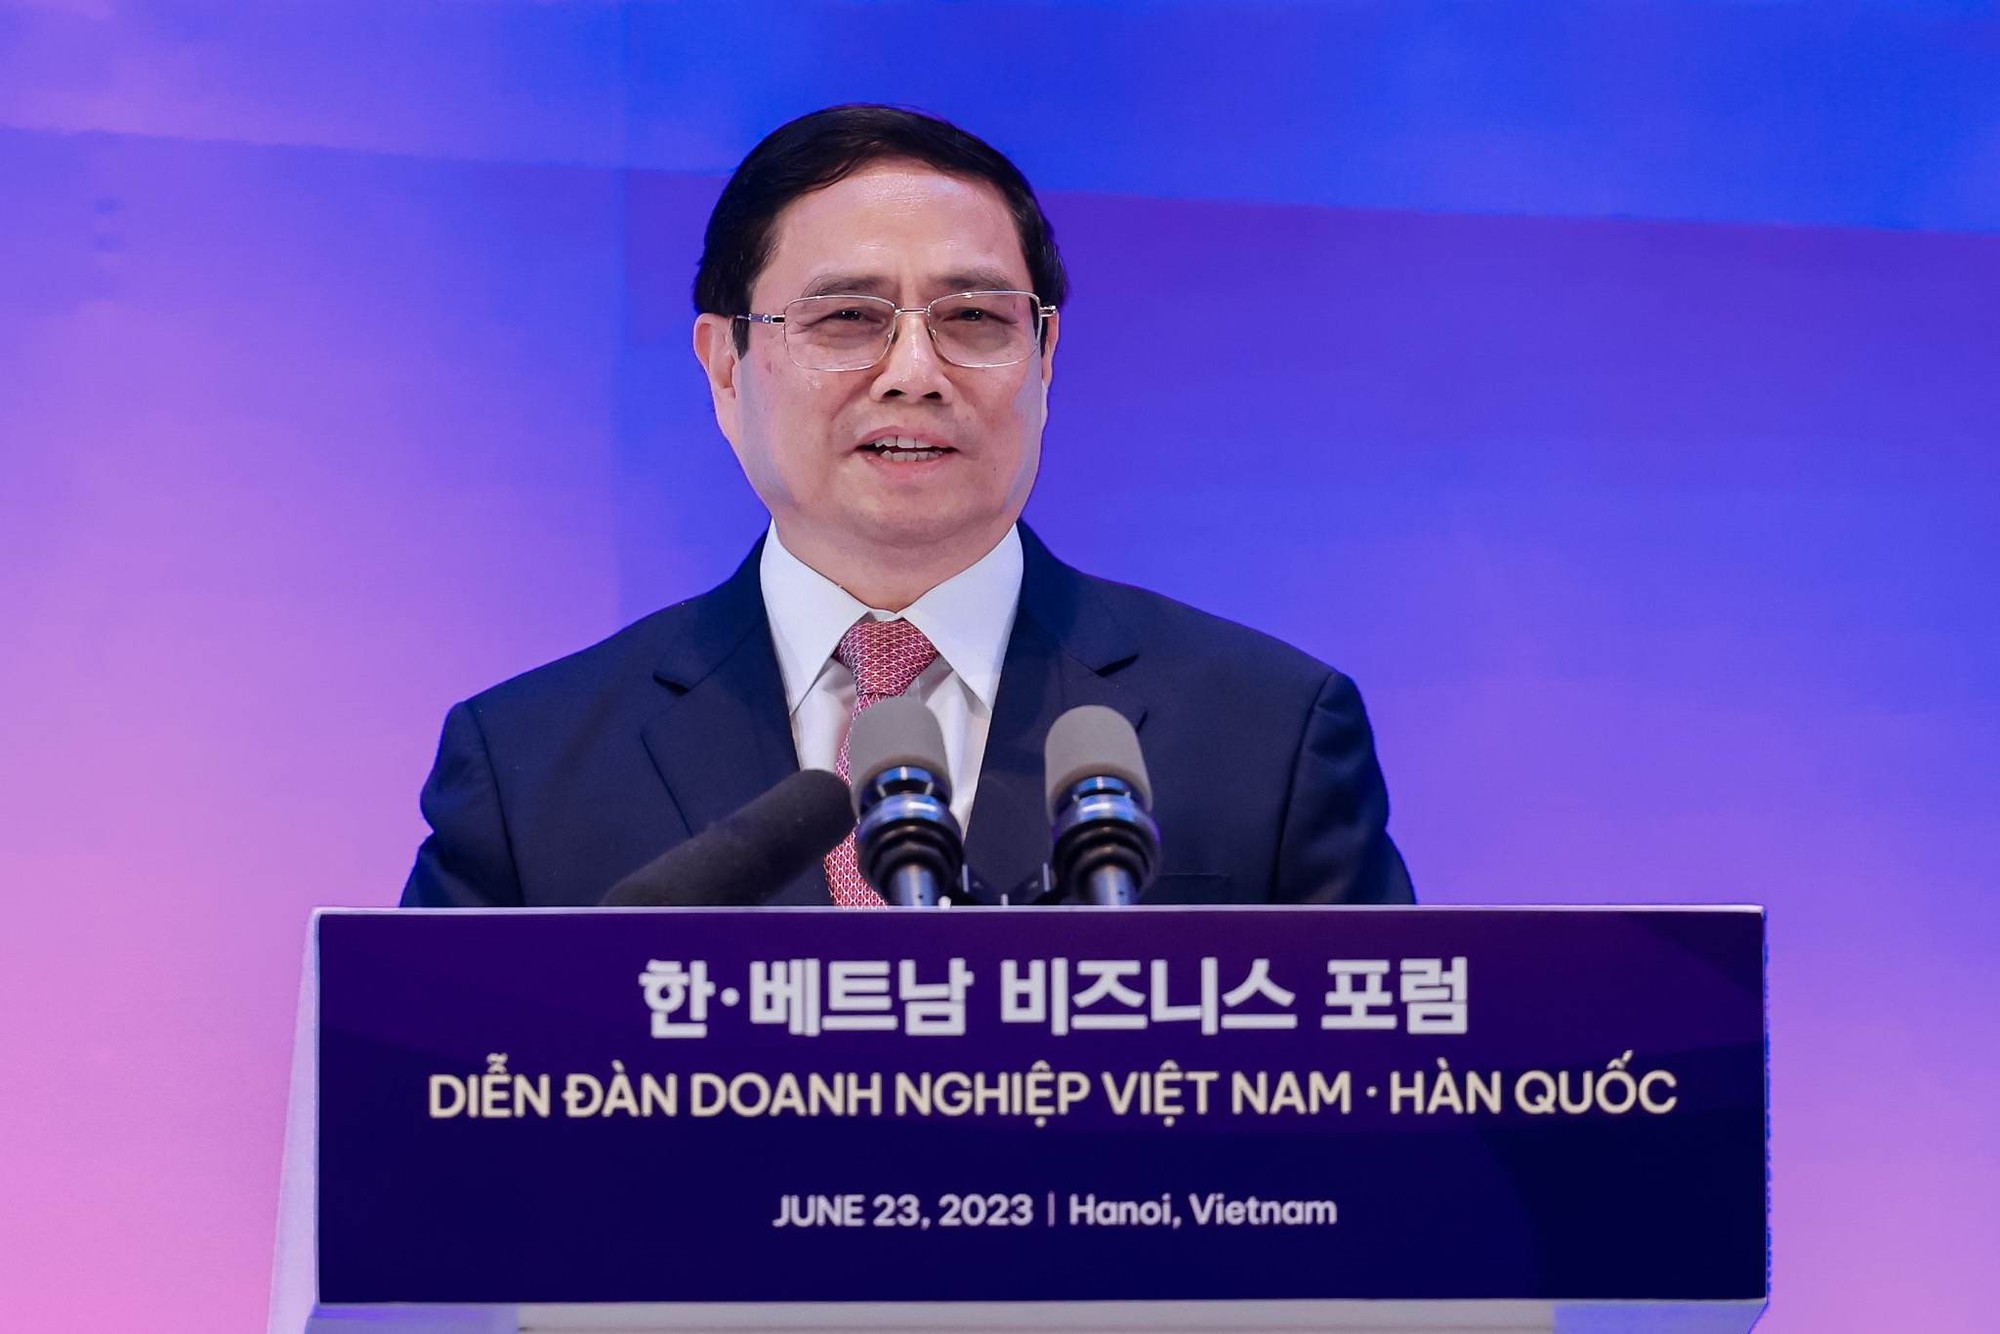 Thủ tướng muốn doanh nghiệp Hàn 'rót tiền' cho công nghiệp giải trí Việt - Ảnh 1.